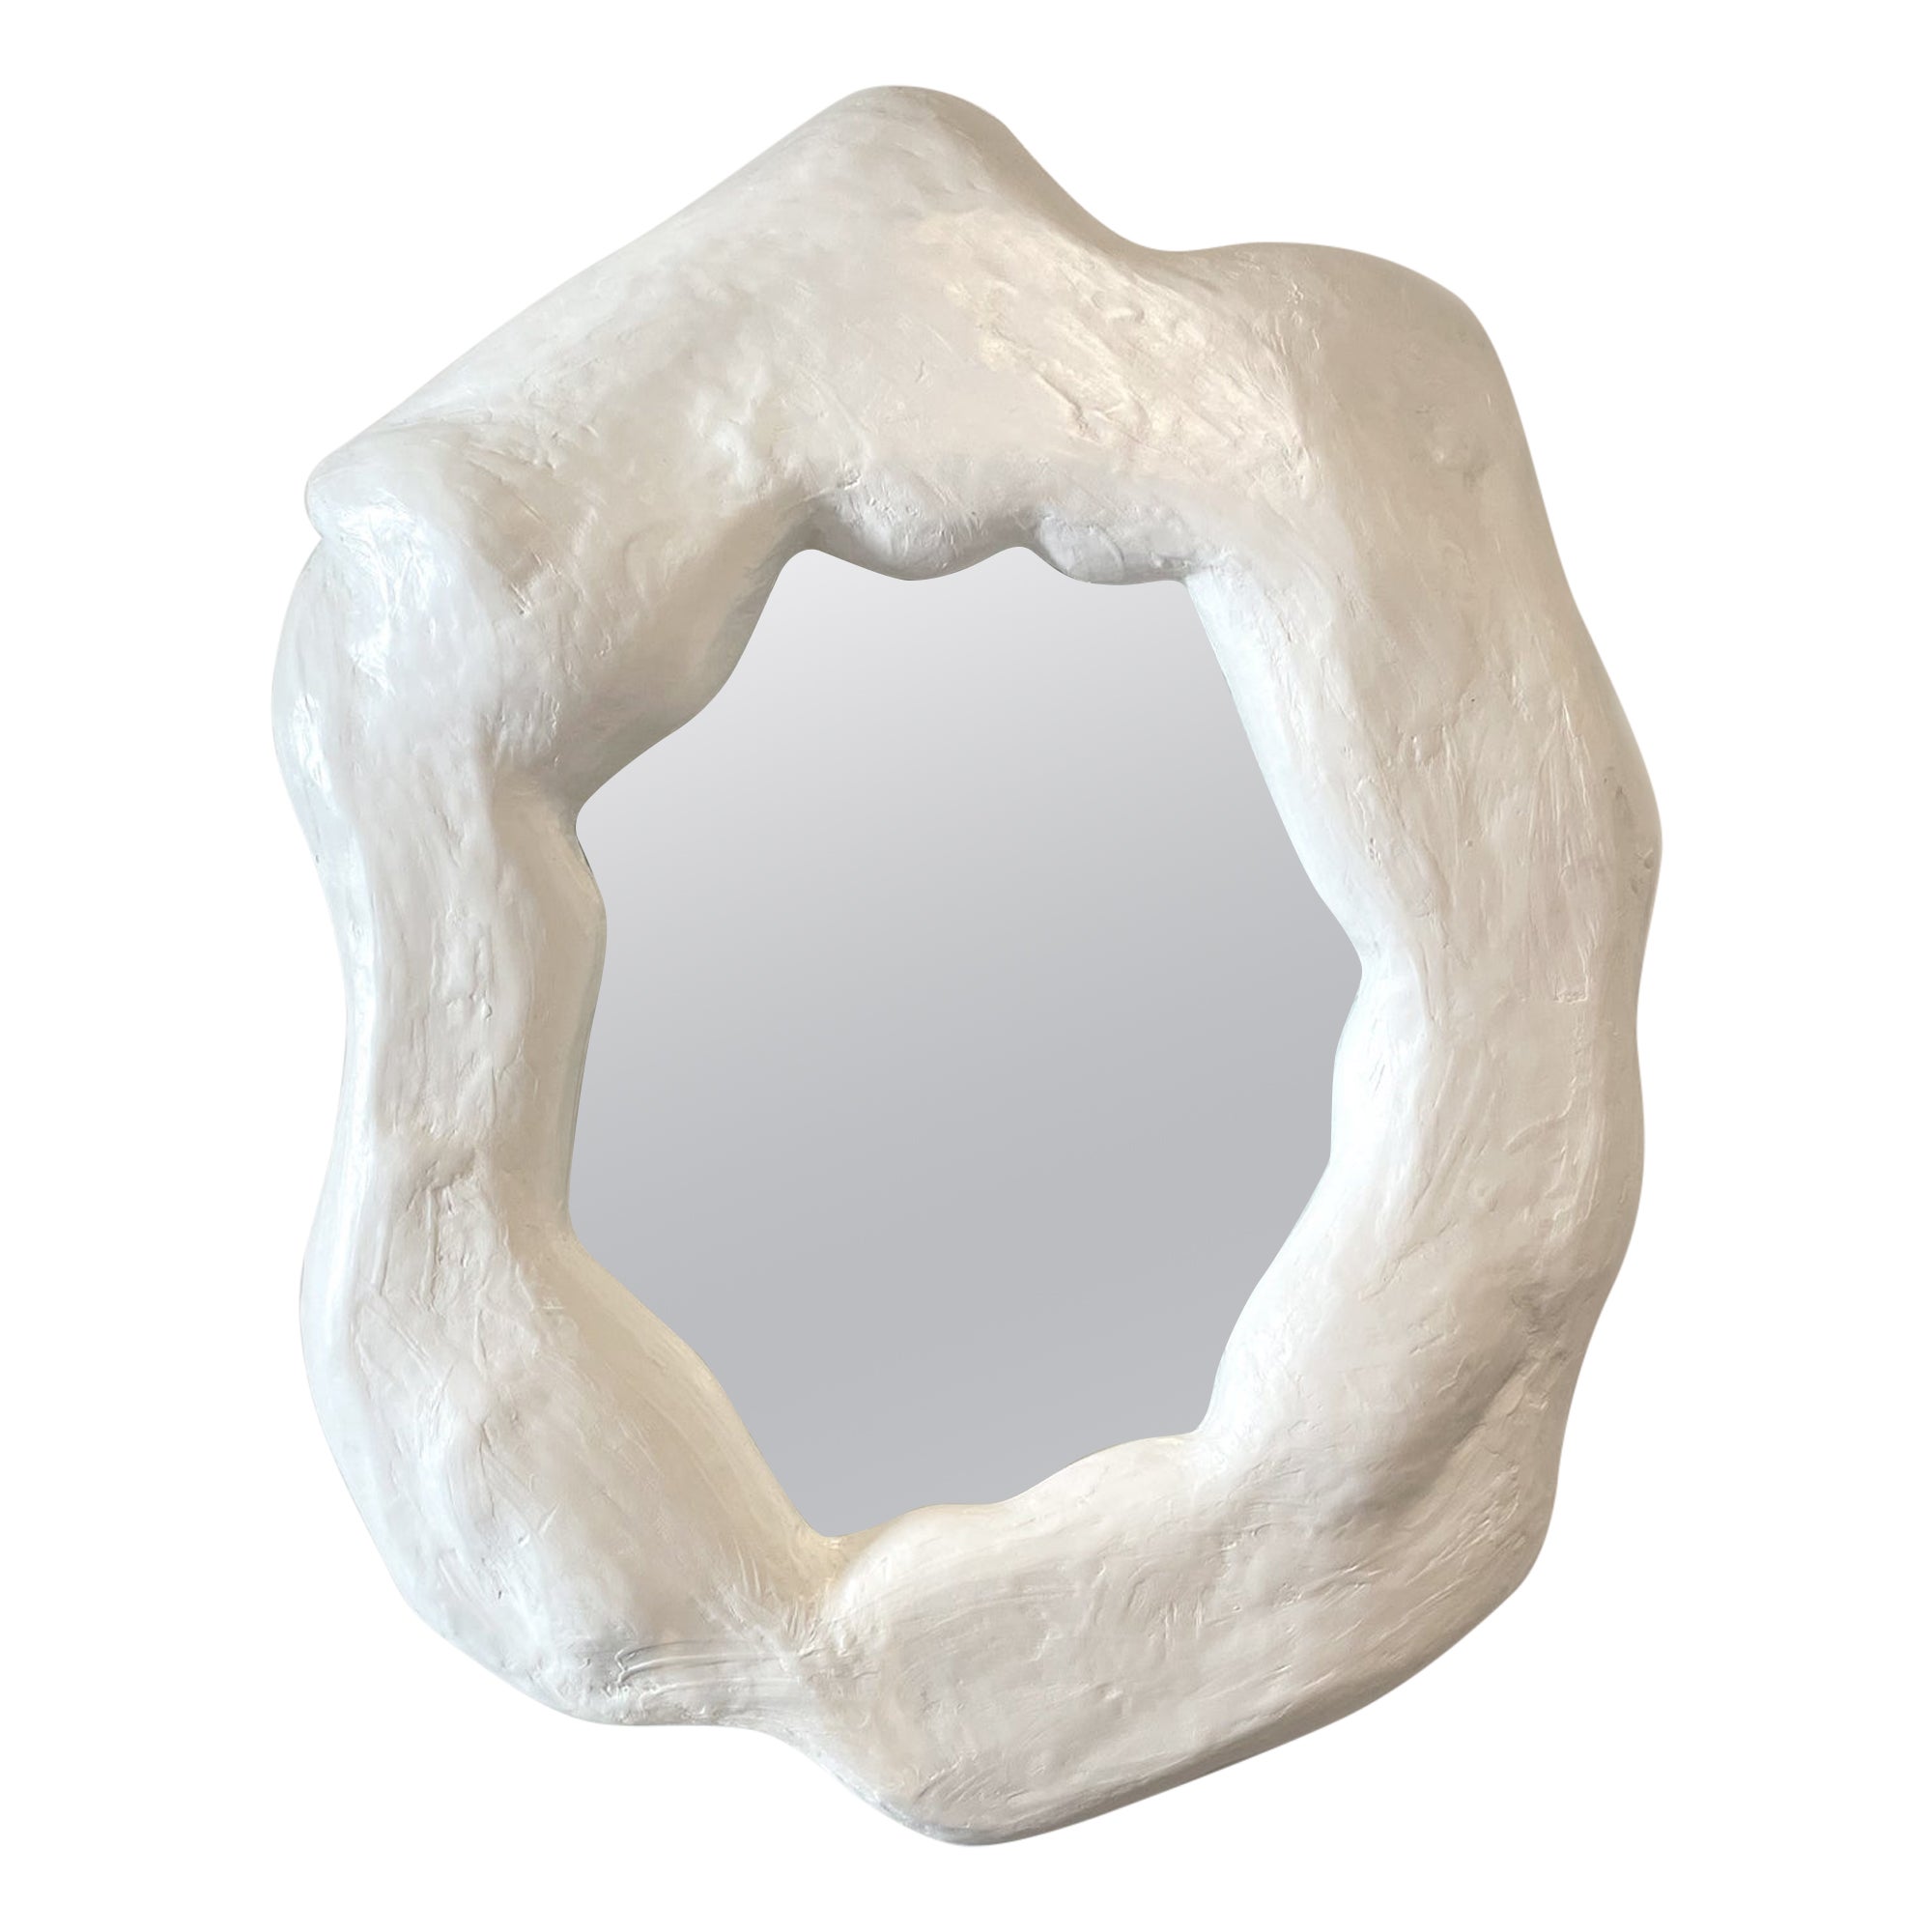 Funktionale Wandspiegel-Skulptur „Iceberg“ von Alexey Krupinin